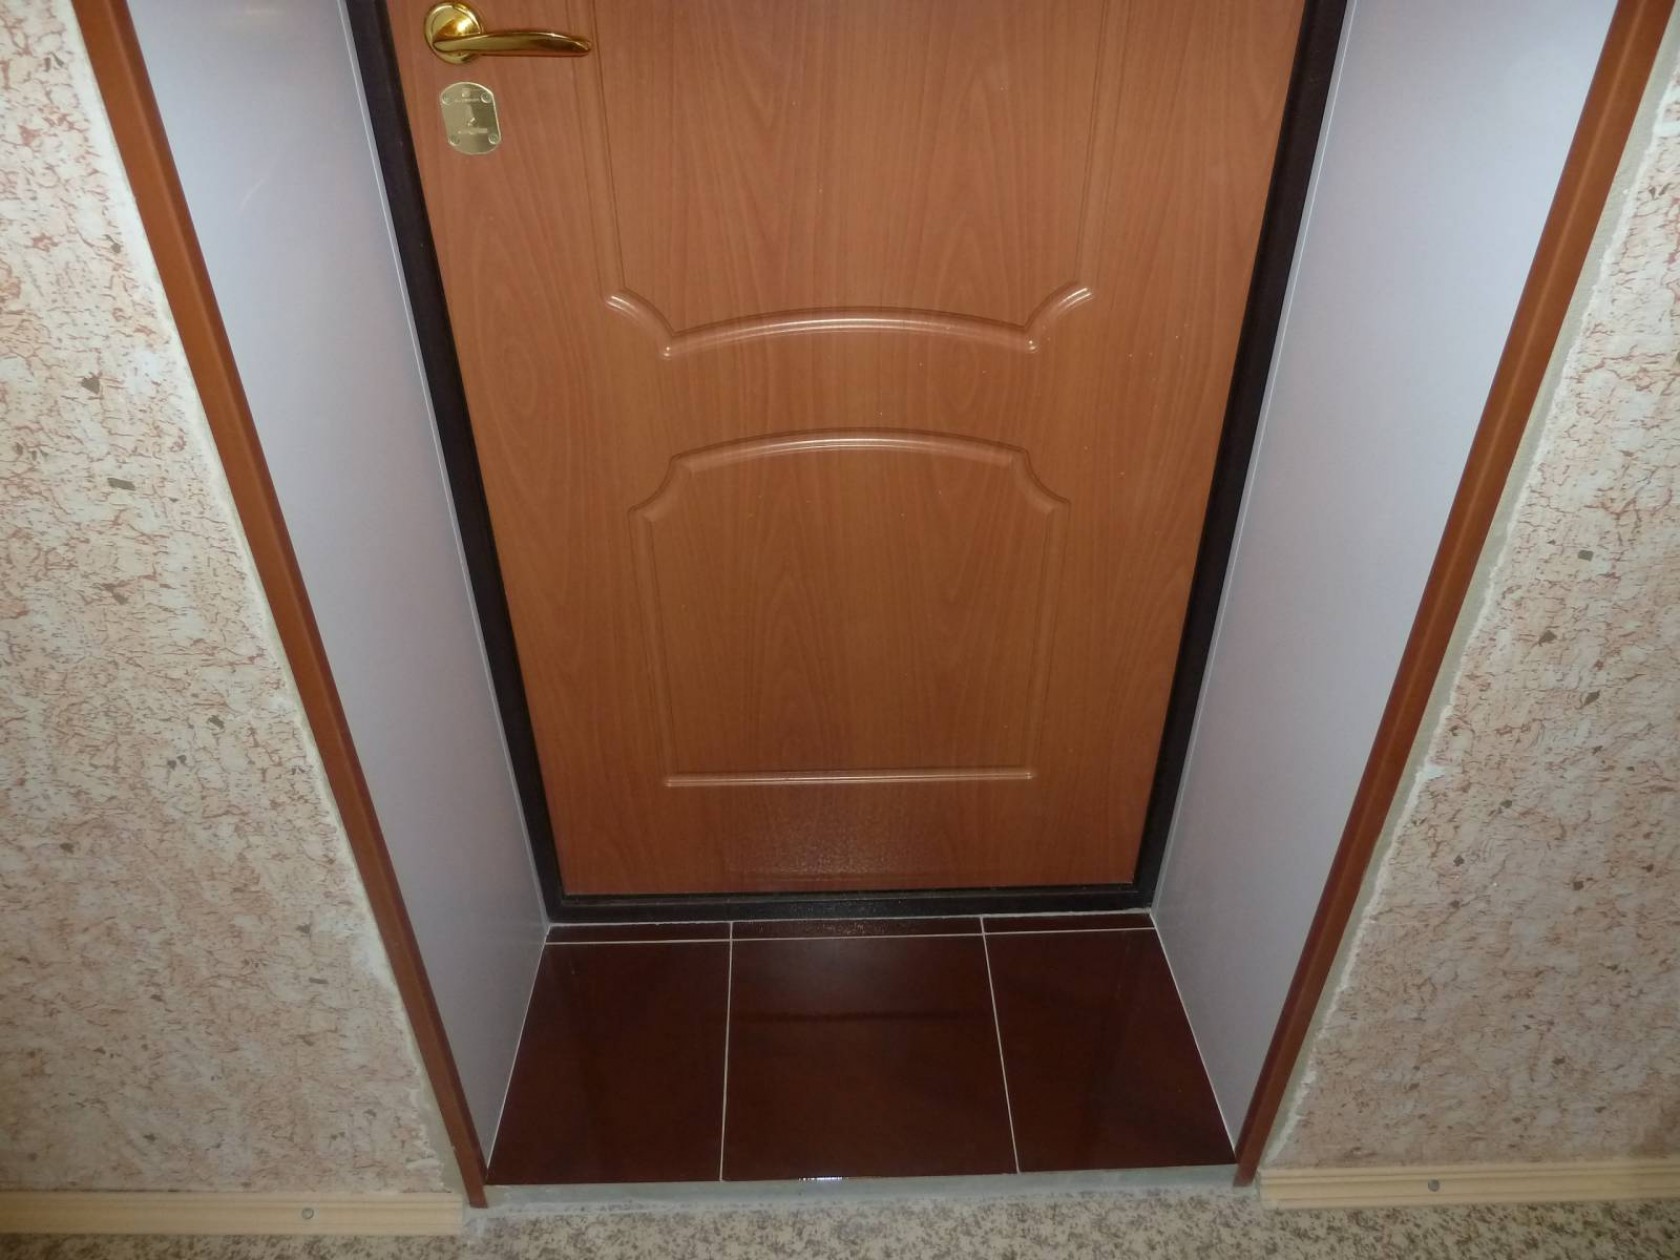 способов отделки откосов входной двери